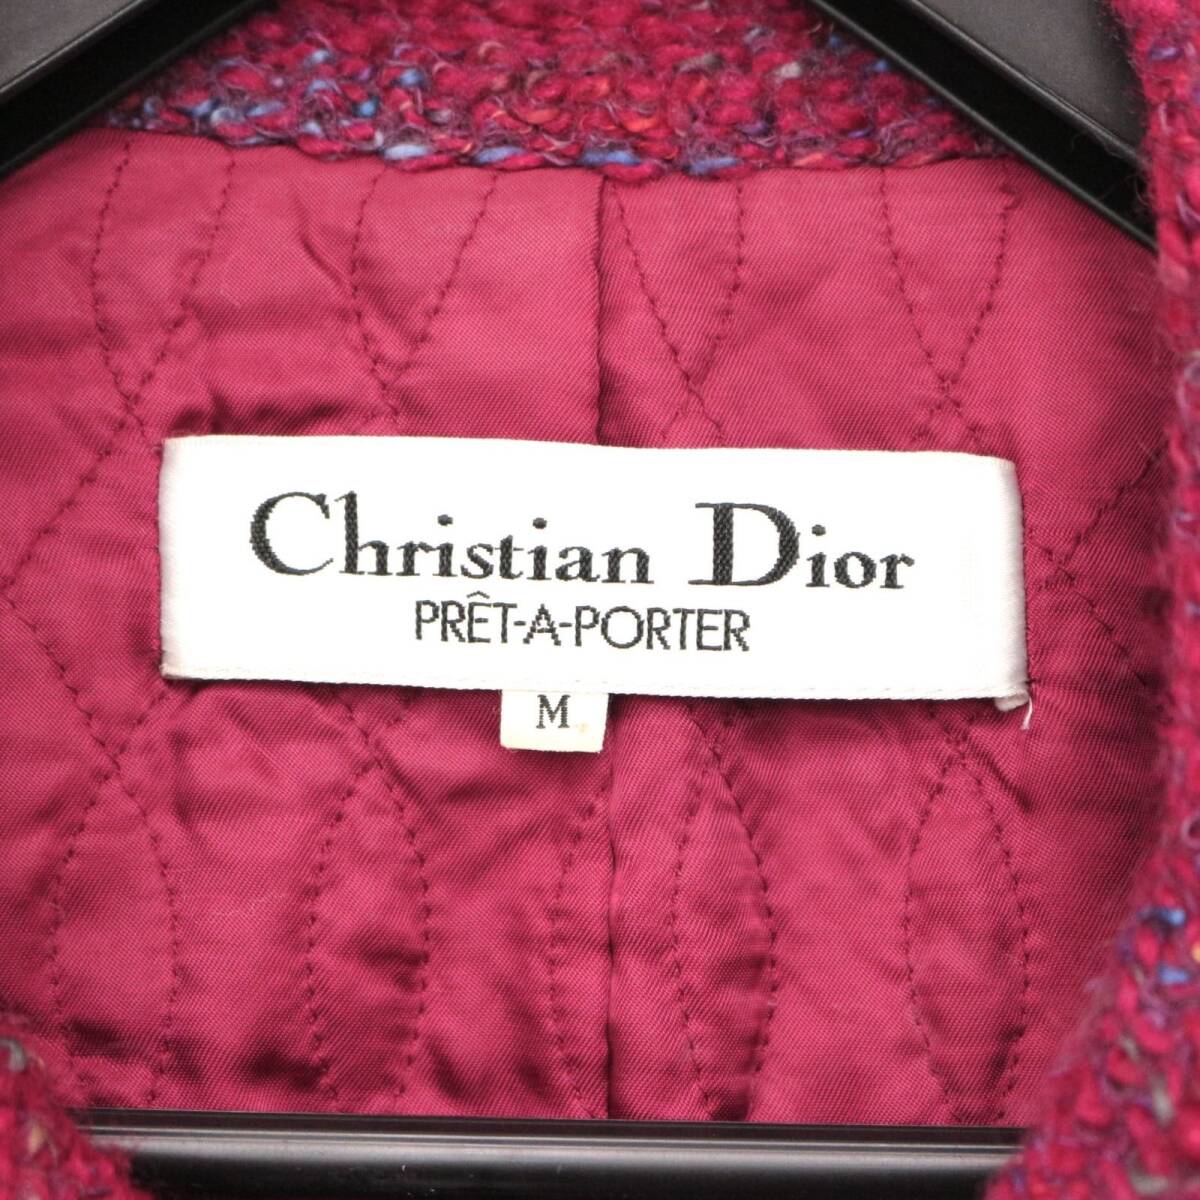  Christian Dior PRET A PORTER вязаный жакет свитер tops pre ta Porte б/у одежда шерсть красный красный red Christian Dior